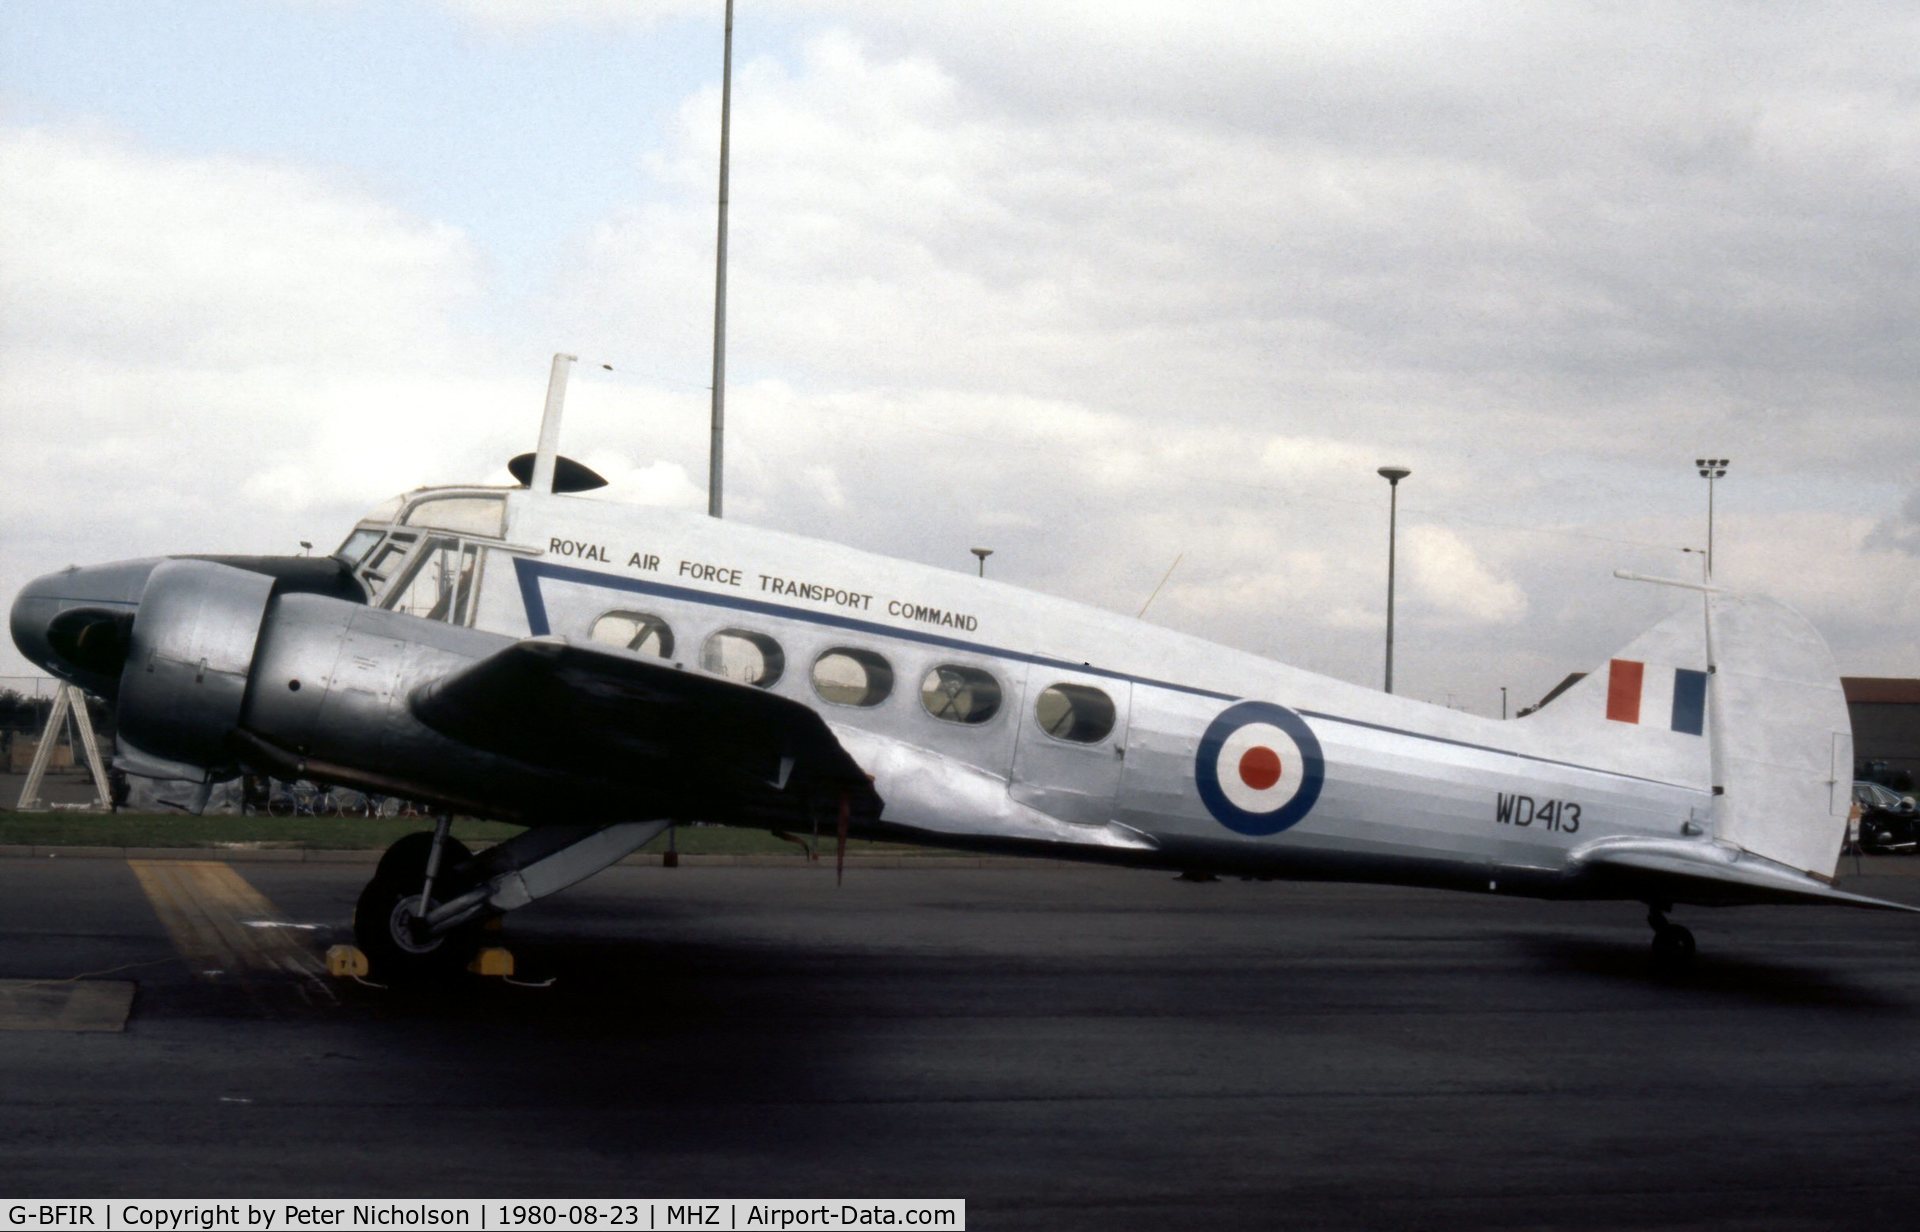 G-BFIR, 1950 Avro 652A Anson T.21 C/N 3634, Anson C.21 with civil registration G-BFIR at the 1980 Mildenhall Air Fete.